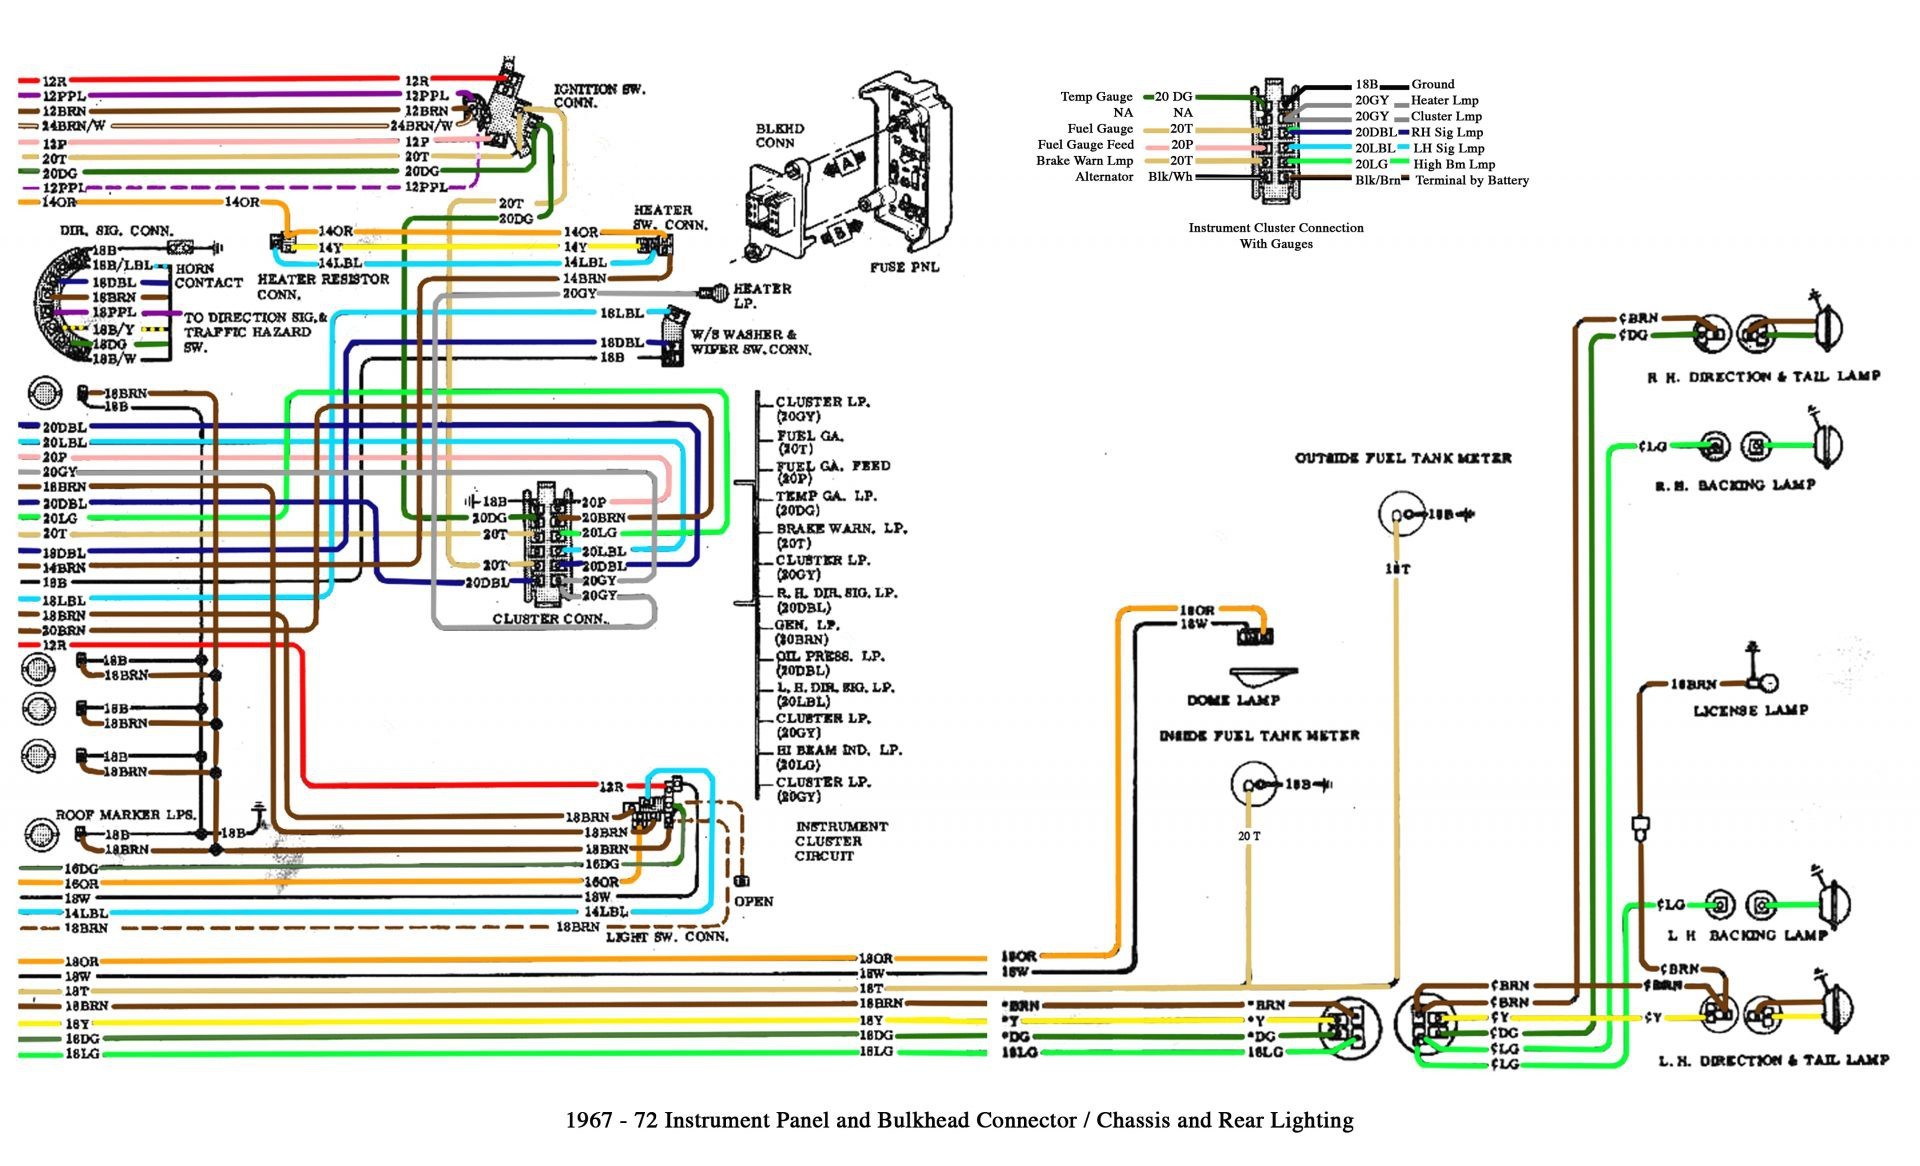 Car Electrical Diagram Best Speaker Wiring Diagram Diagram Of Car Electrical Diagram